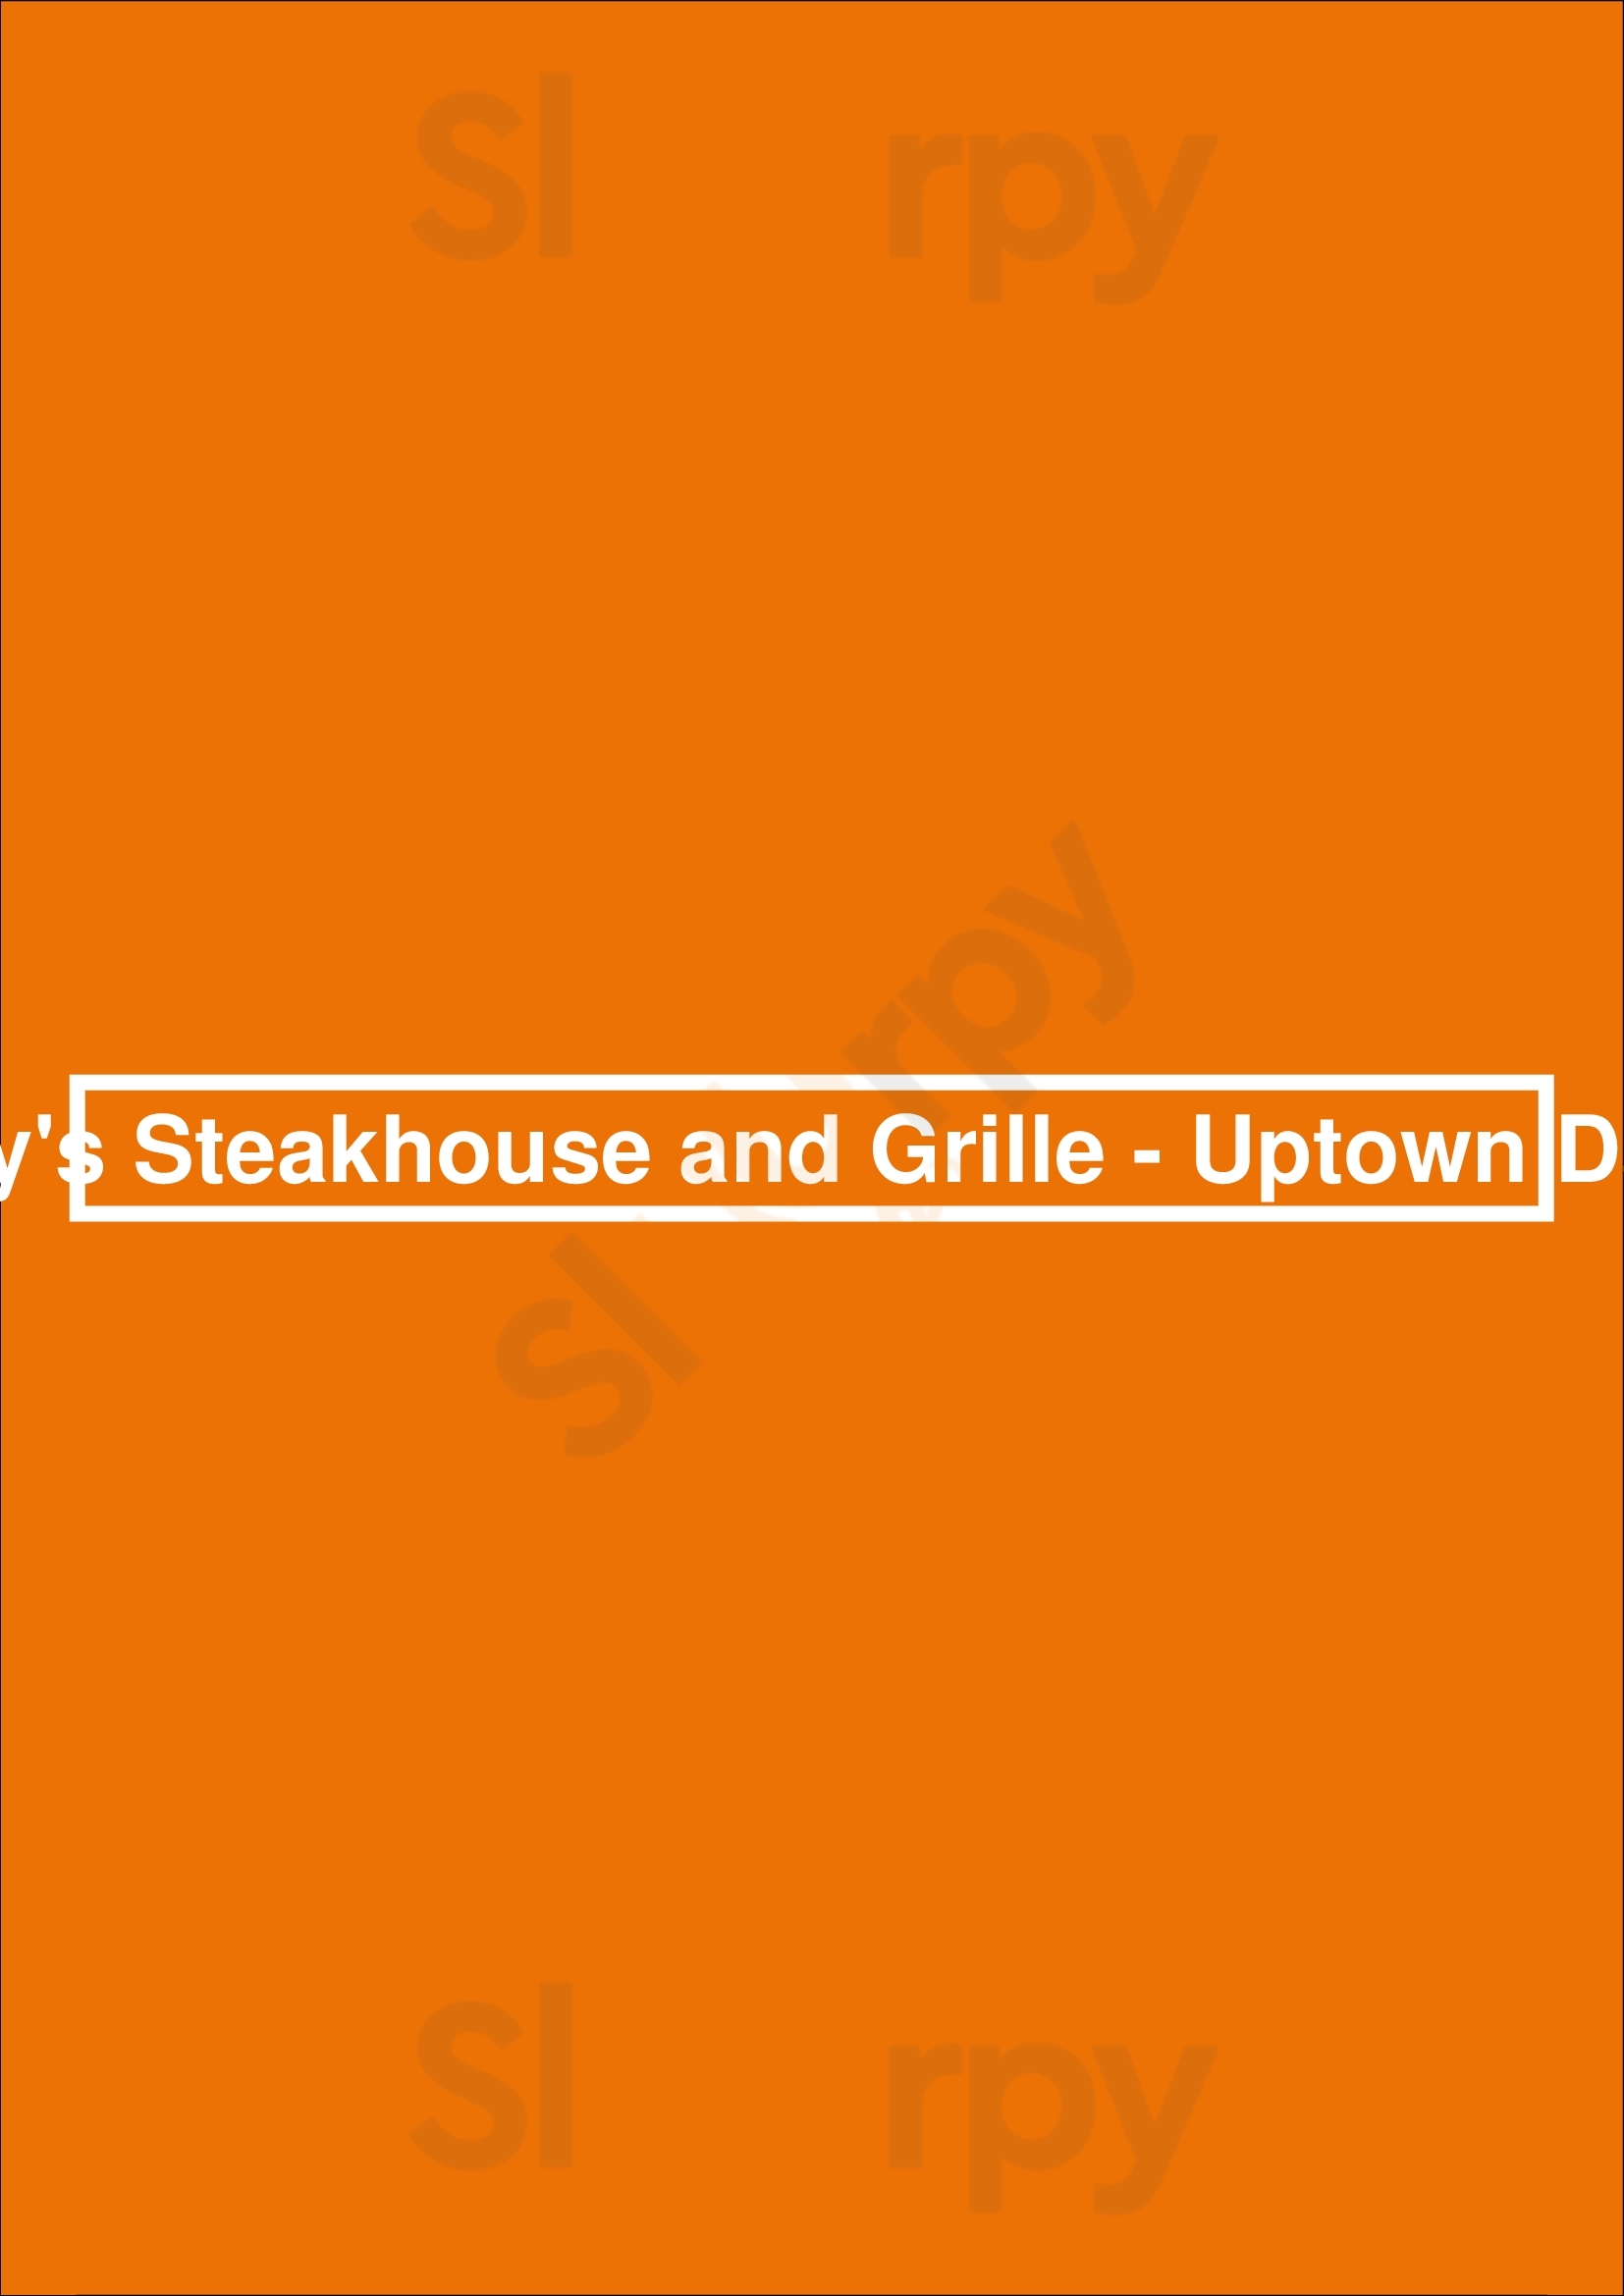 Perry's Steakhouse & Grille - Park District Dallas Menu - 1